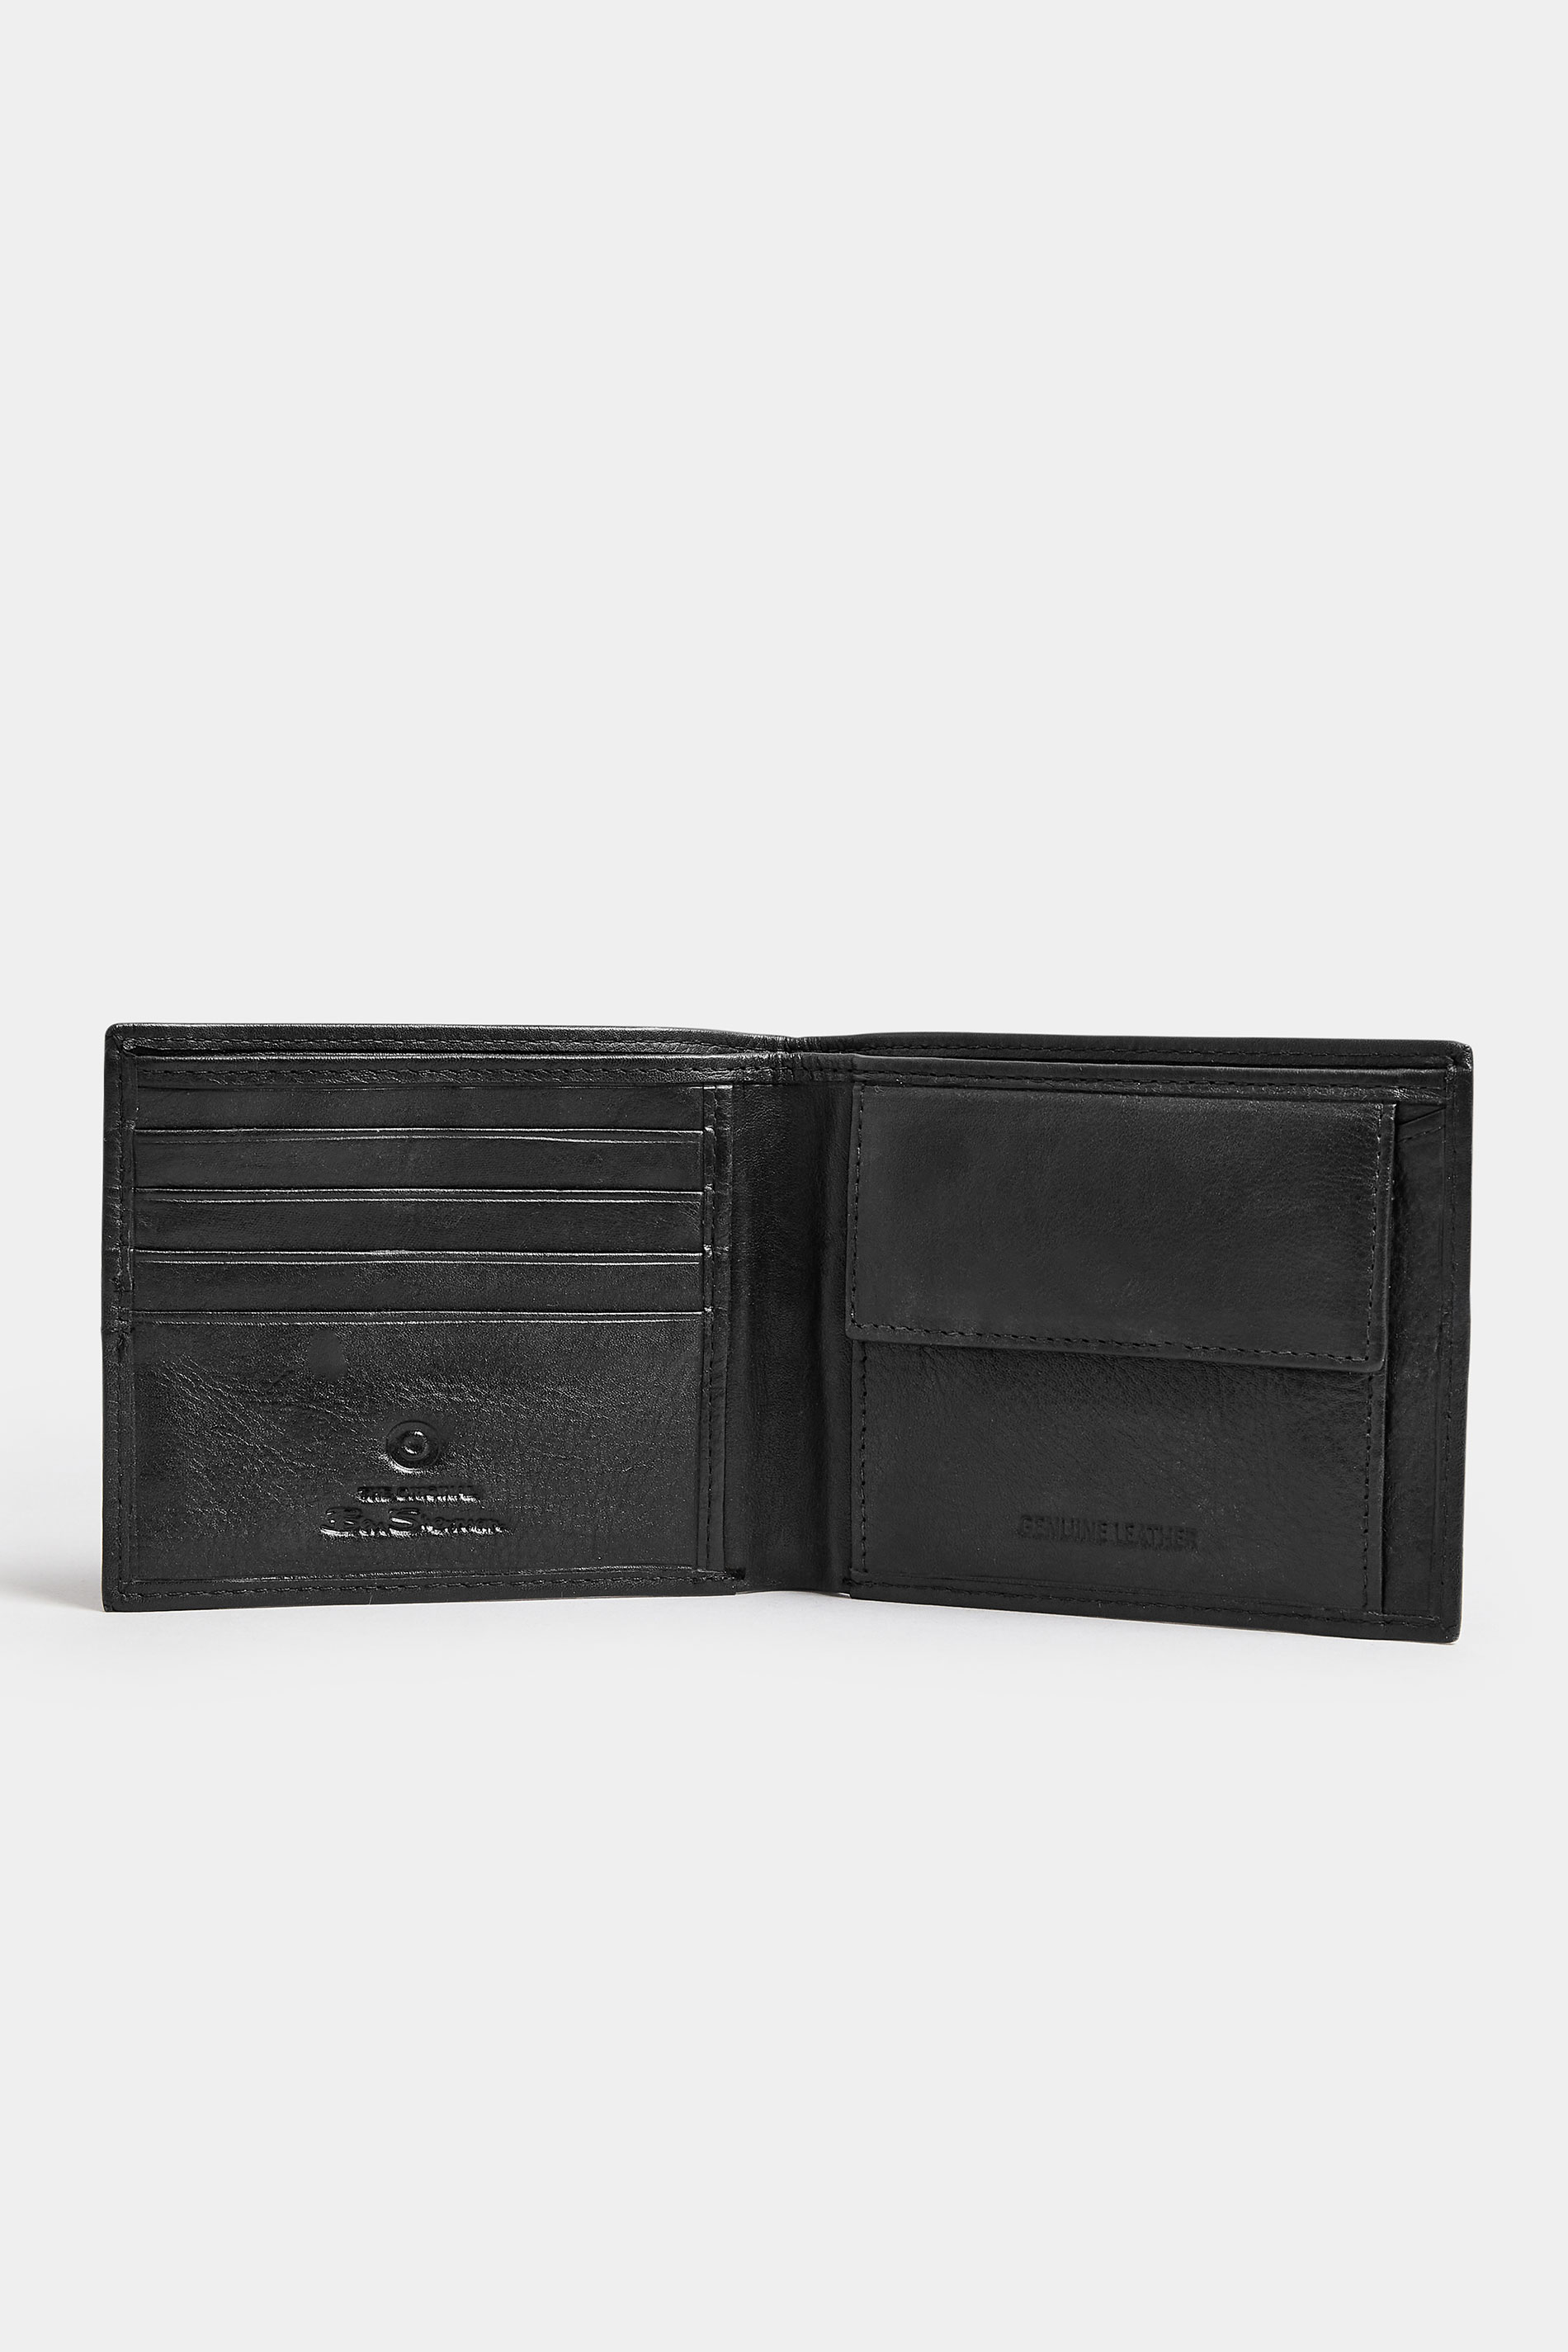 BEN SHERMAN Black Leather 'Freeman' Bi-Fold Wallet | BadRhino 2